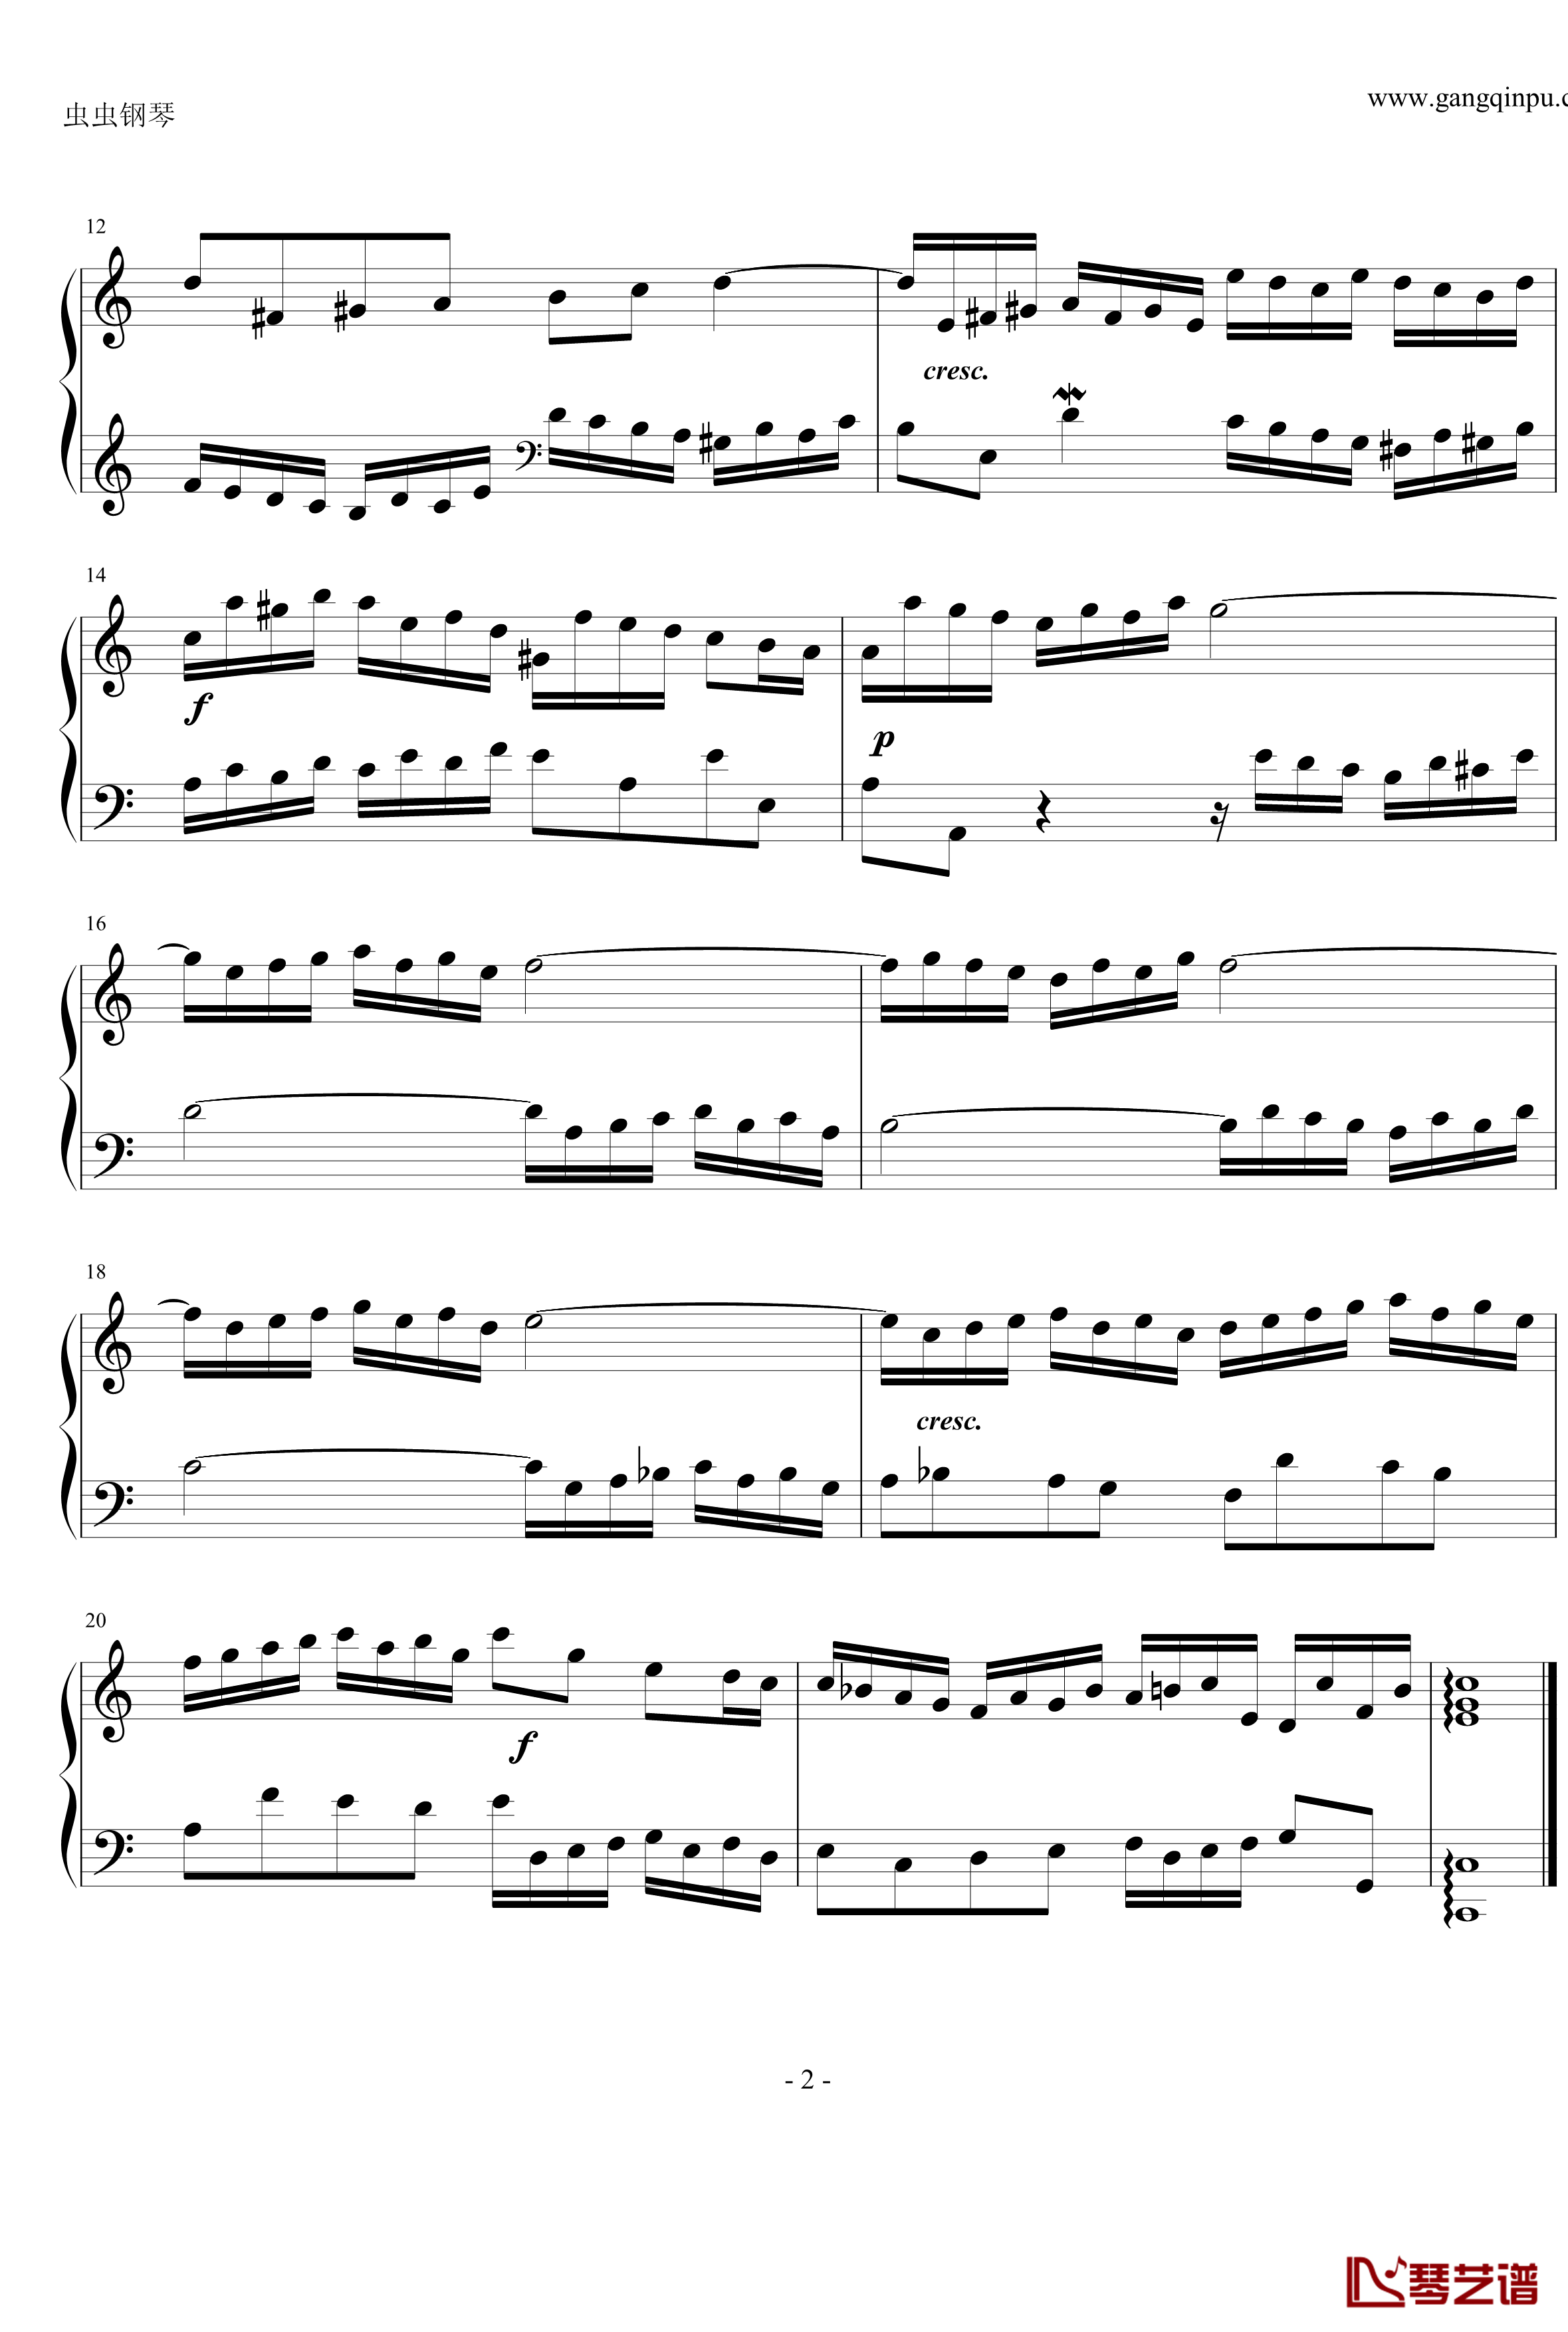 二部创意曲第一号C大调钢琴谱-巴赫-P.E.Bach